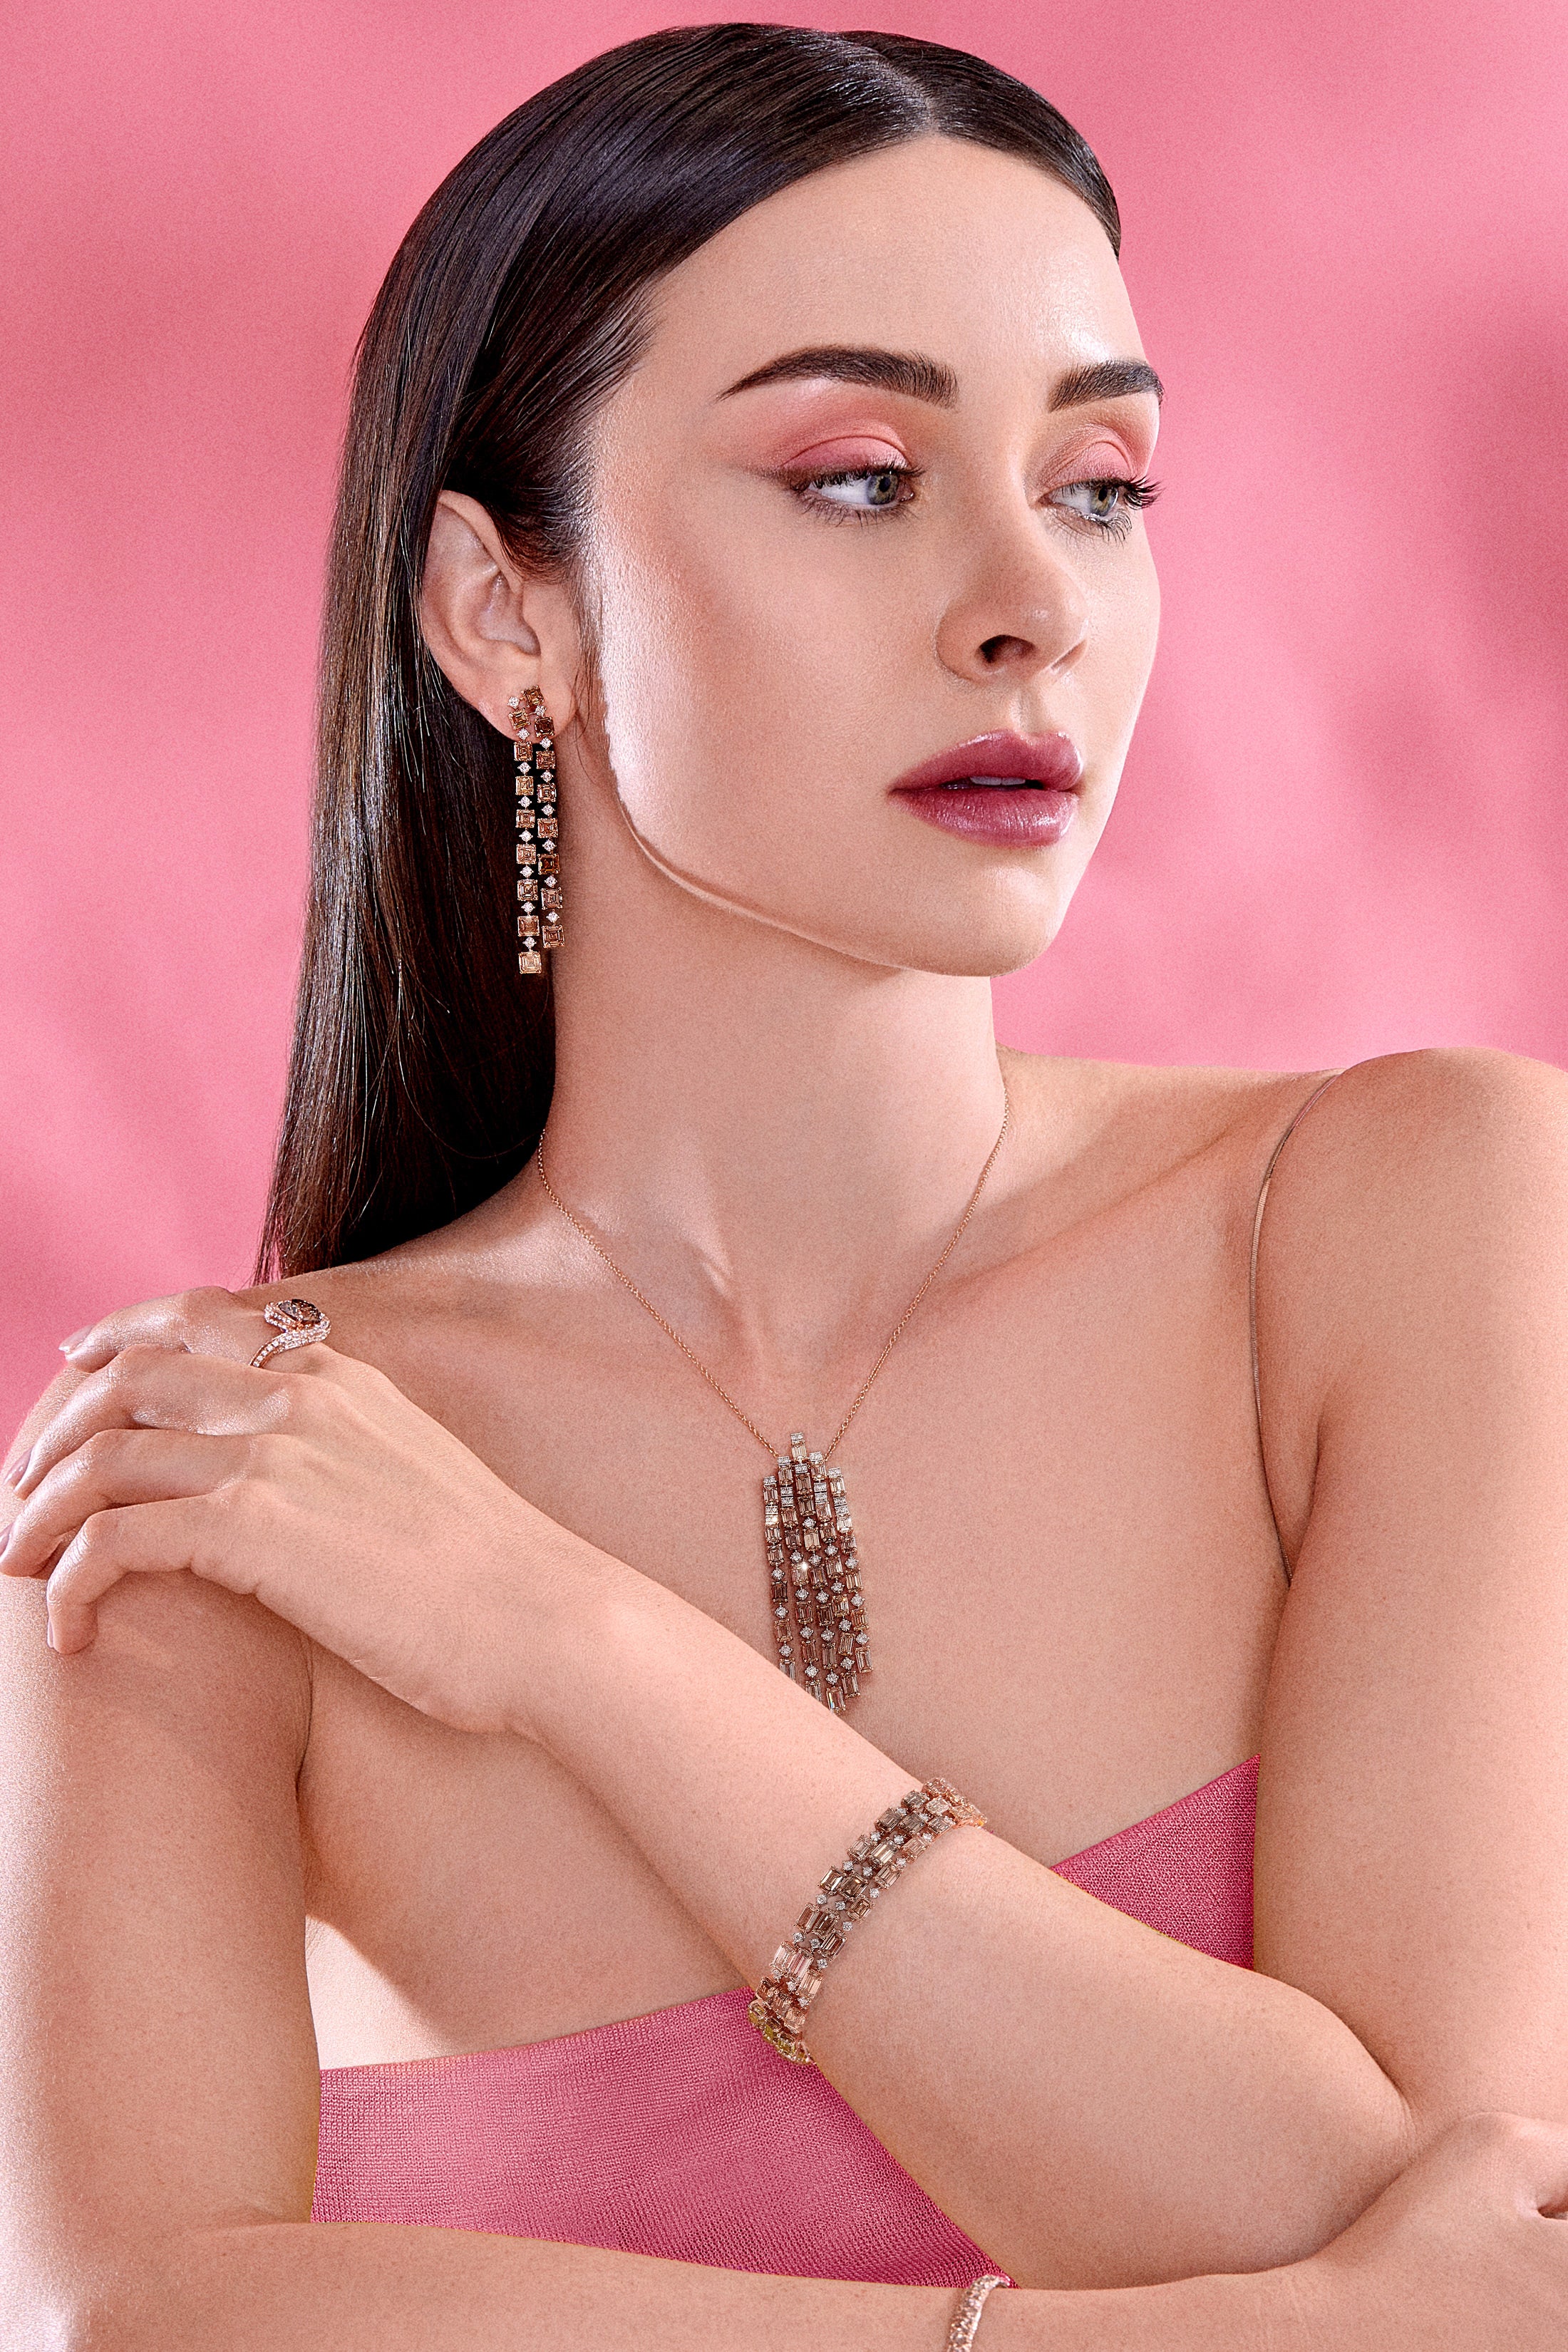 Brown Asscher Cut Diamond Earrings - Pink Diamonds, J FINE - J Fine, Earrings - Pink Diamond Jewelry, brown-asscher-cut-diamond-earrings-by-j-fine - Argyle Pink Diamonds